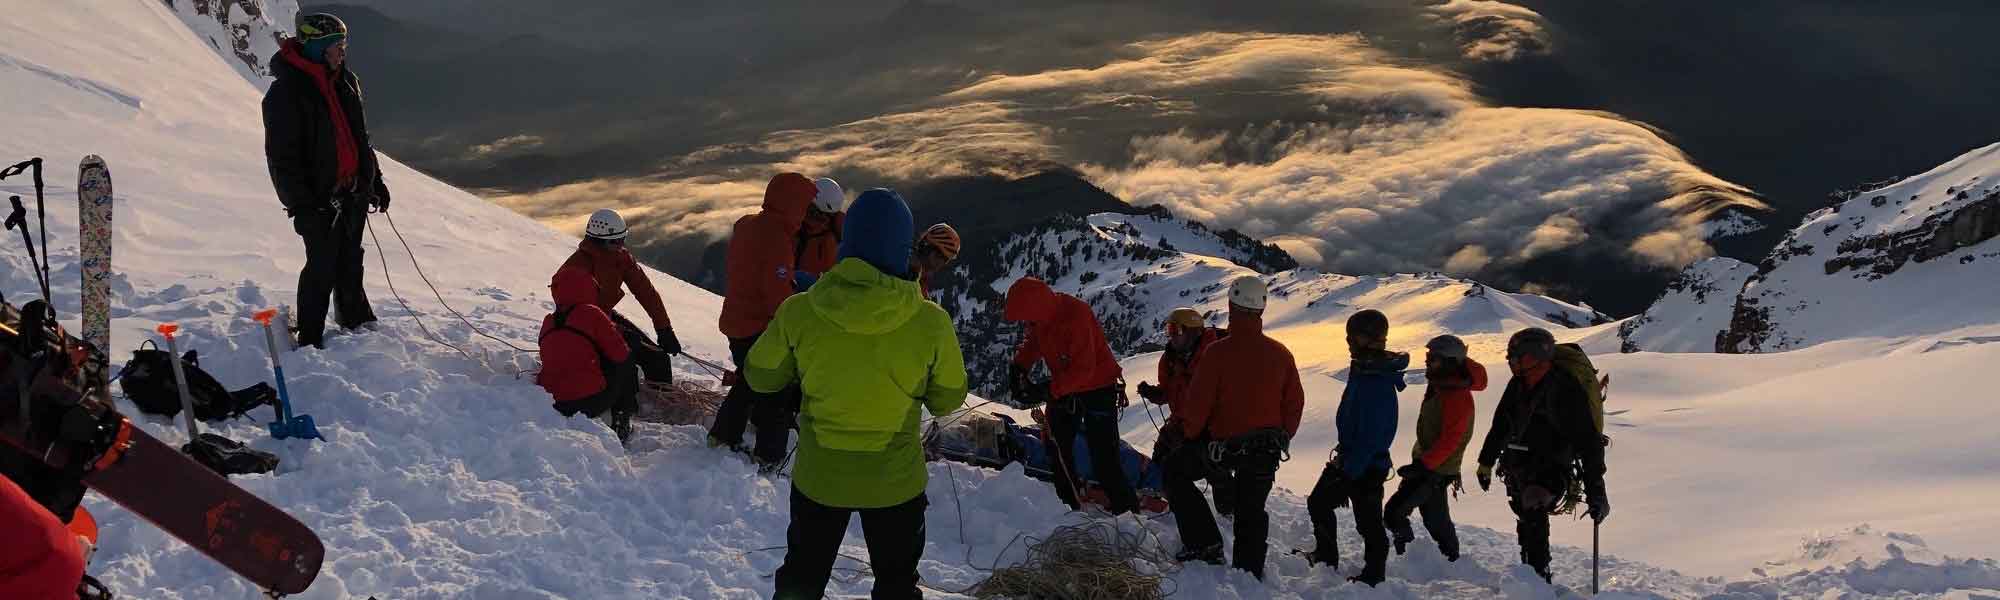 Volunteers on Mt. Hood at sunset